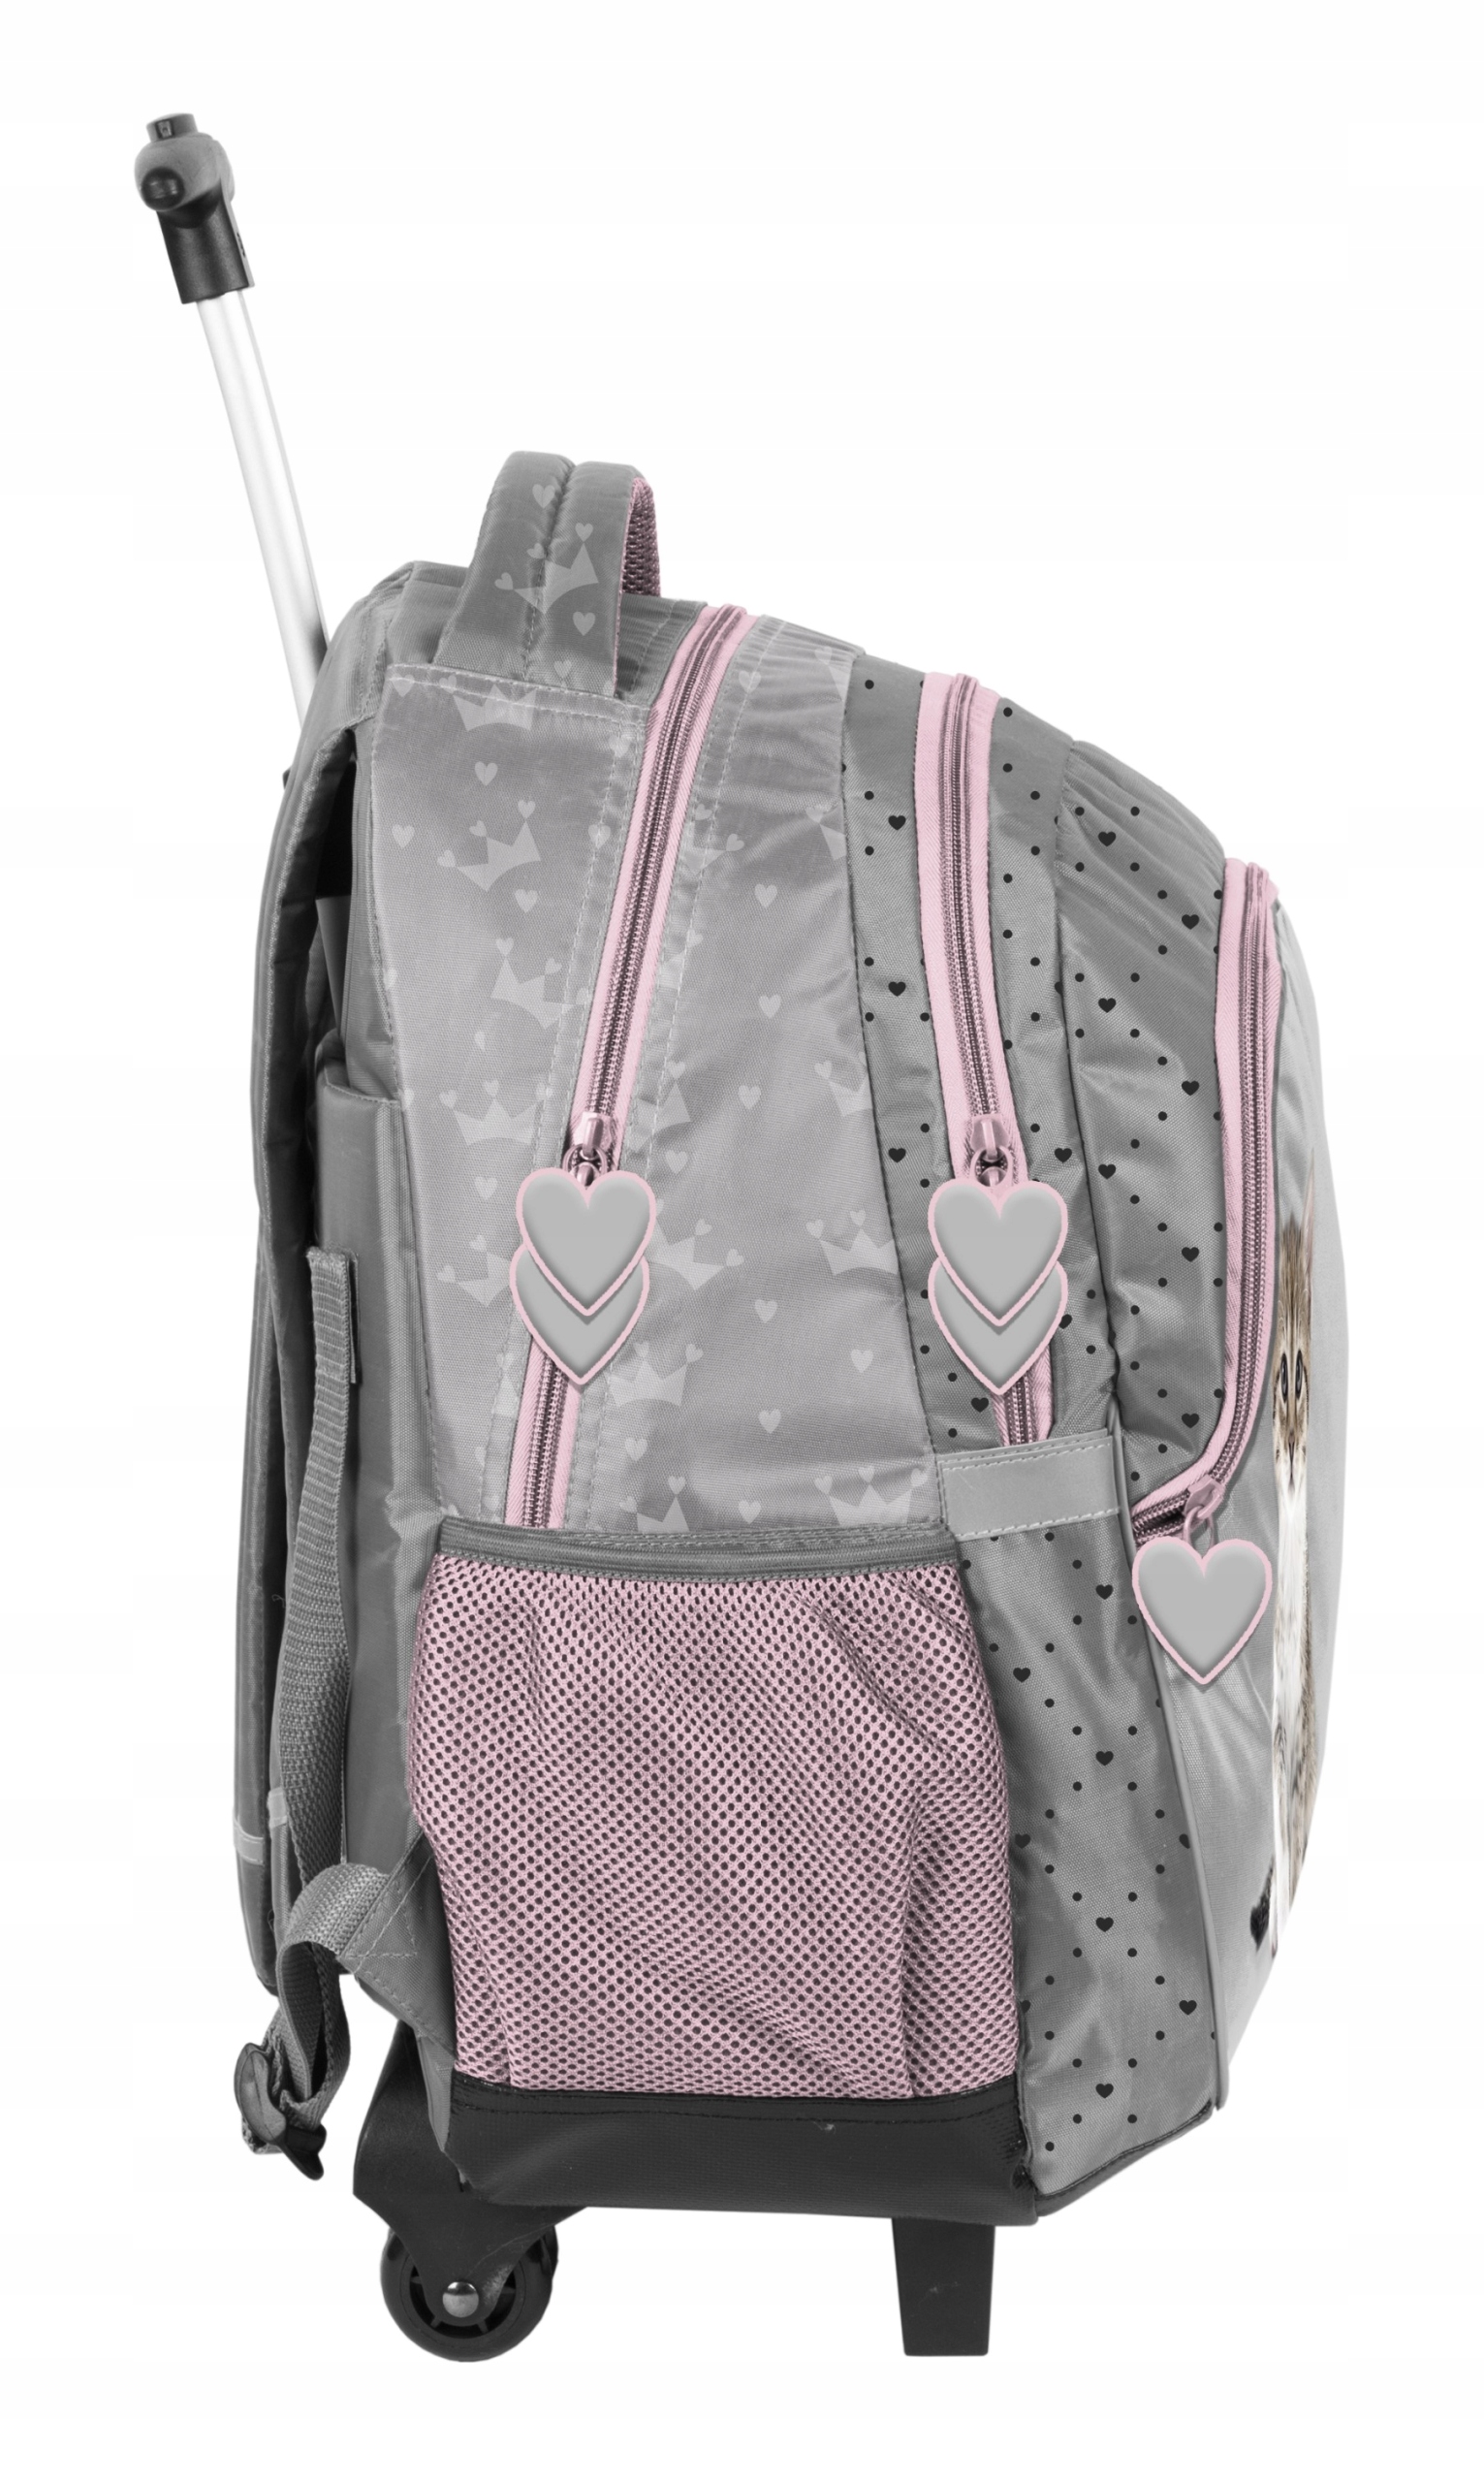 Шкільний рюкзак на колесах для дівчинки бренду Paso